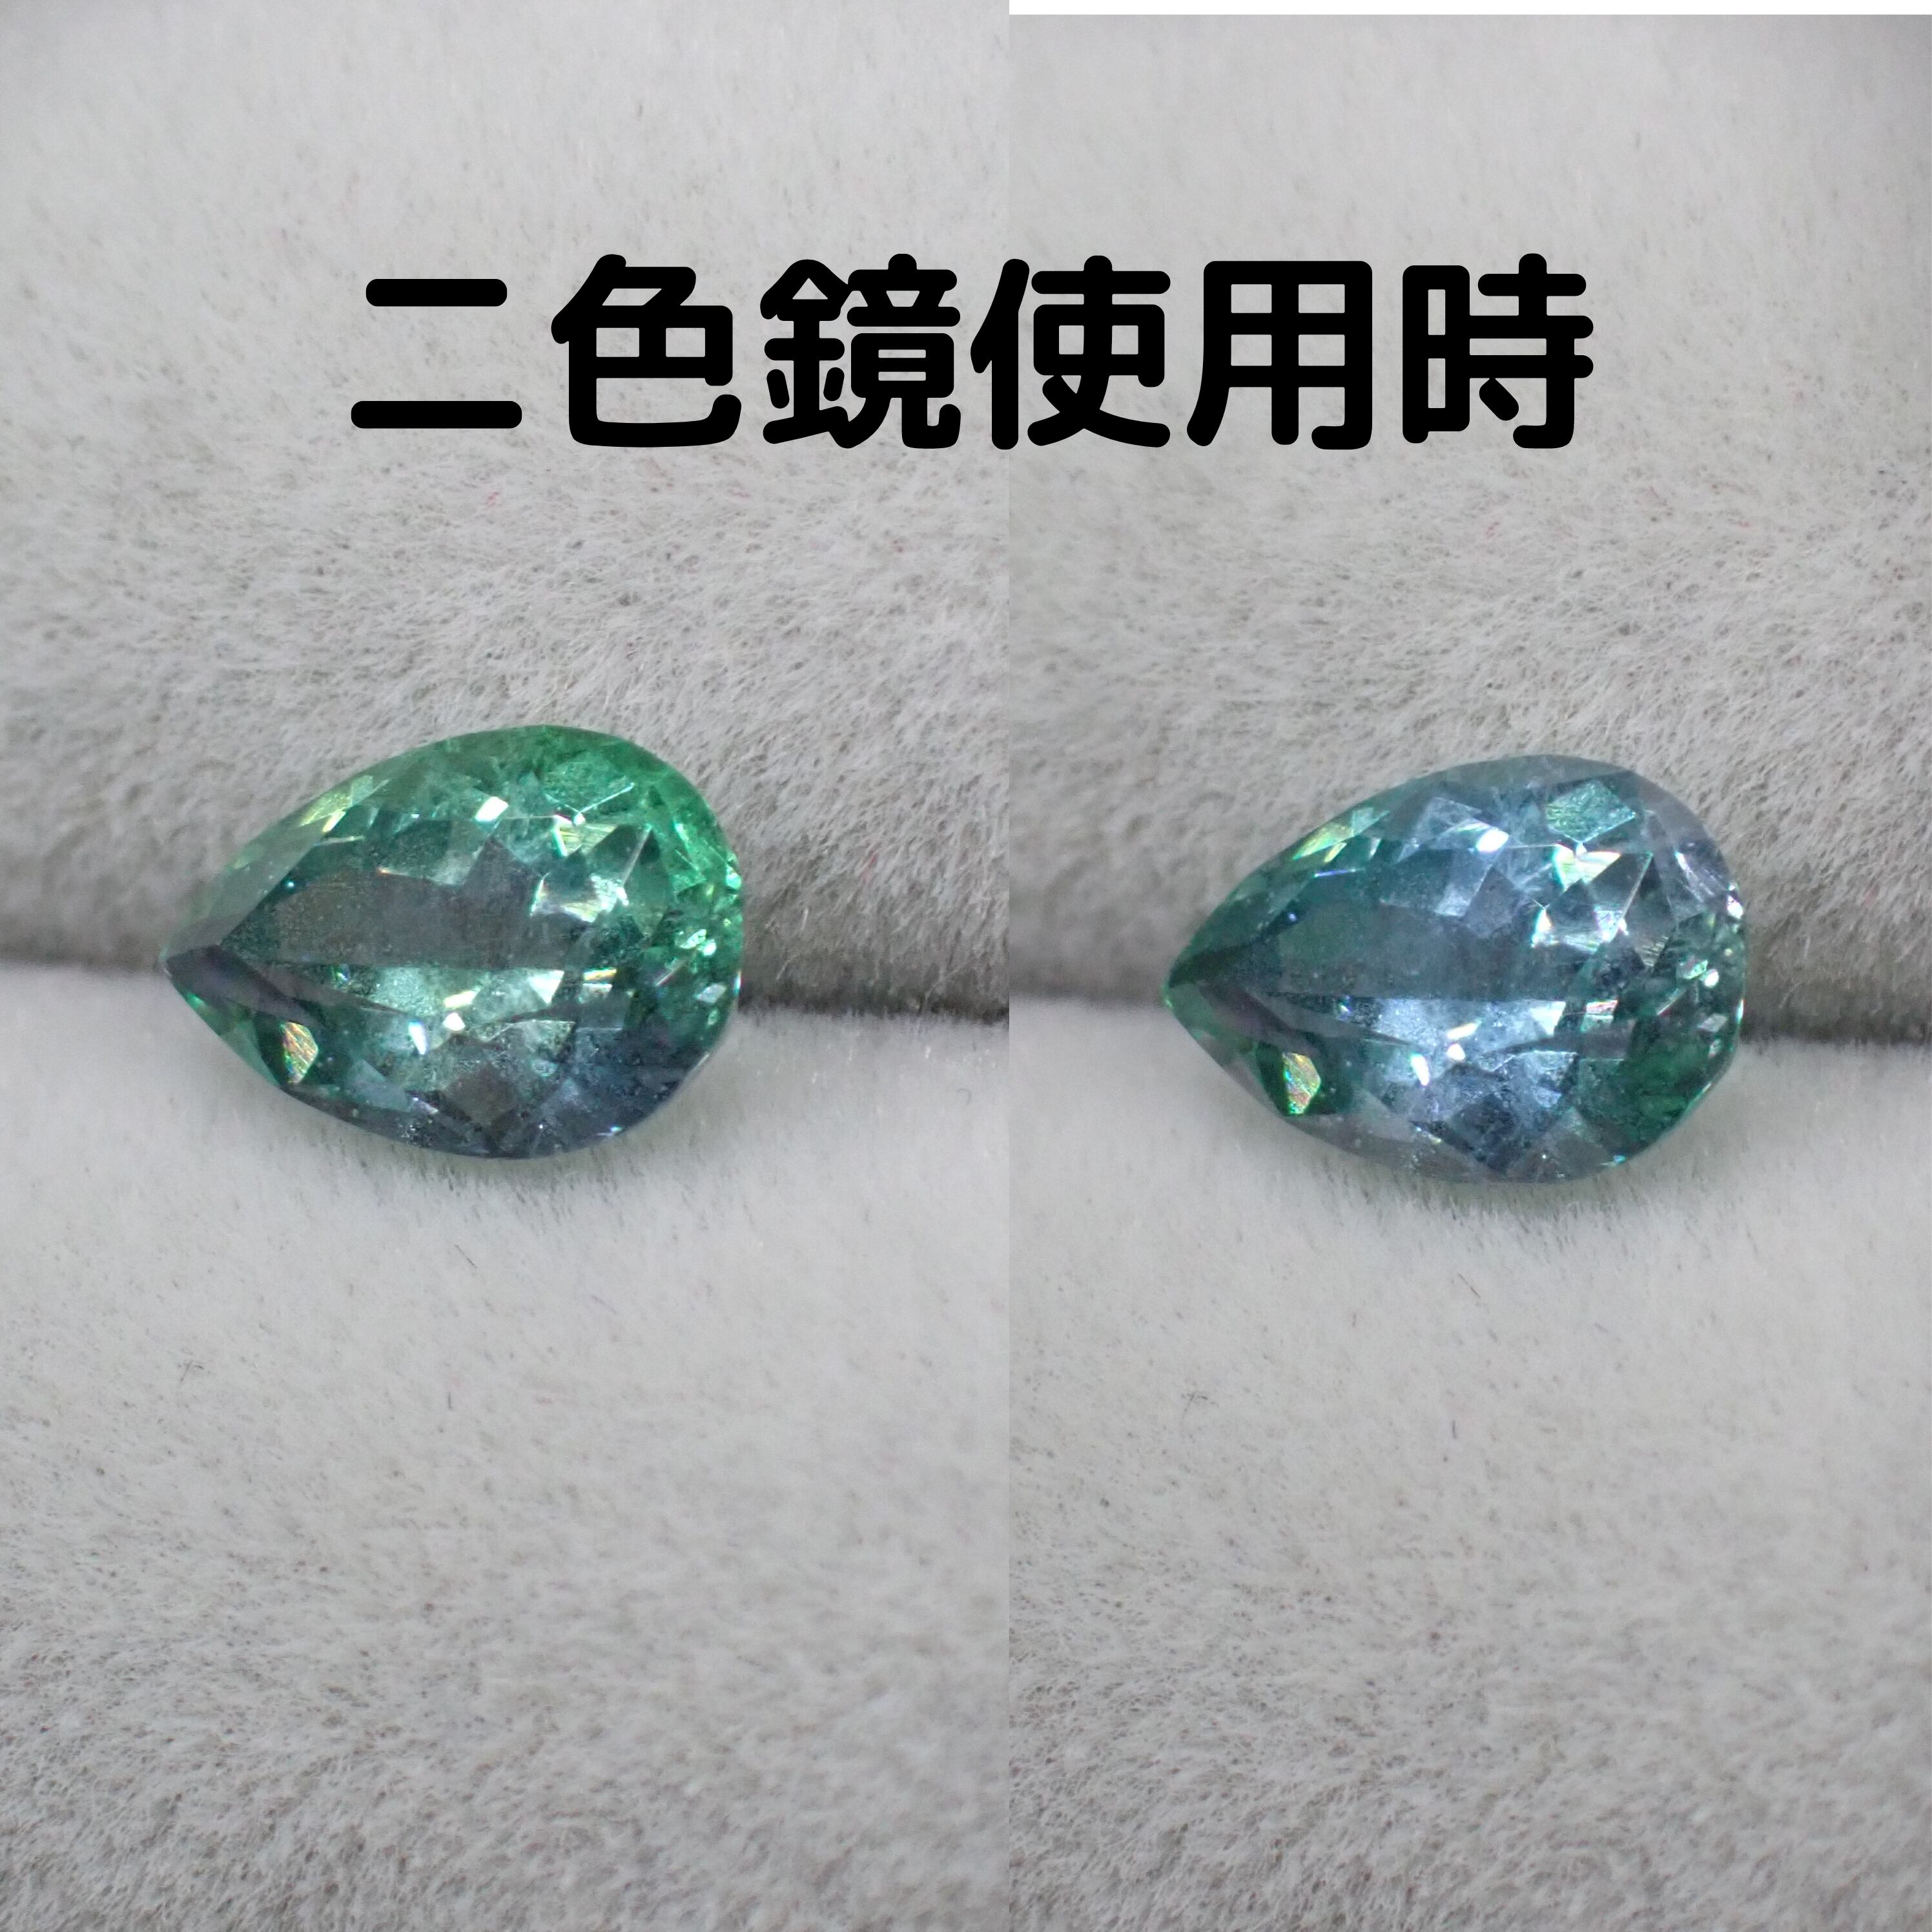 美しい濃いブルーグリーン☆コーネルピン 0.684ct | 宝石ルース販売、ジュエリー加工「宝石つむり」 powered by BASE